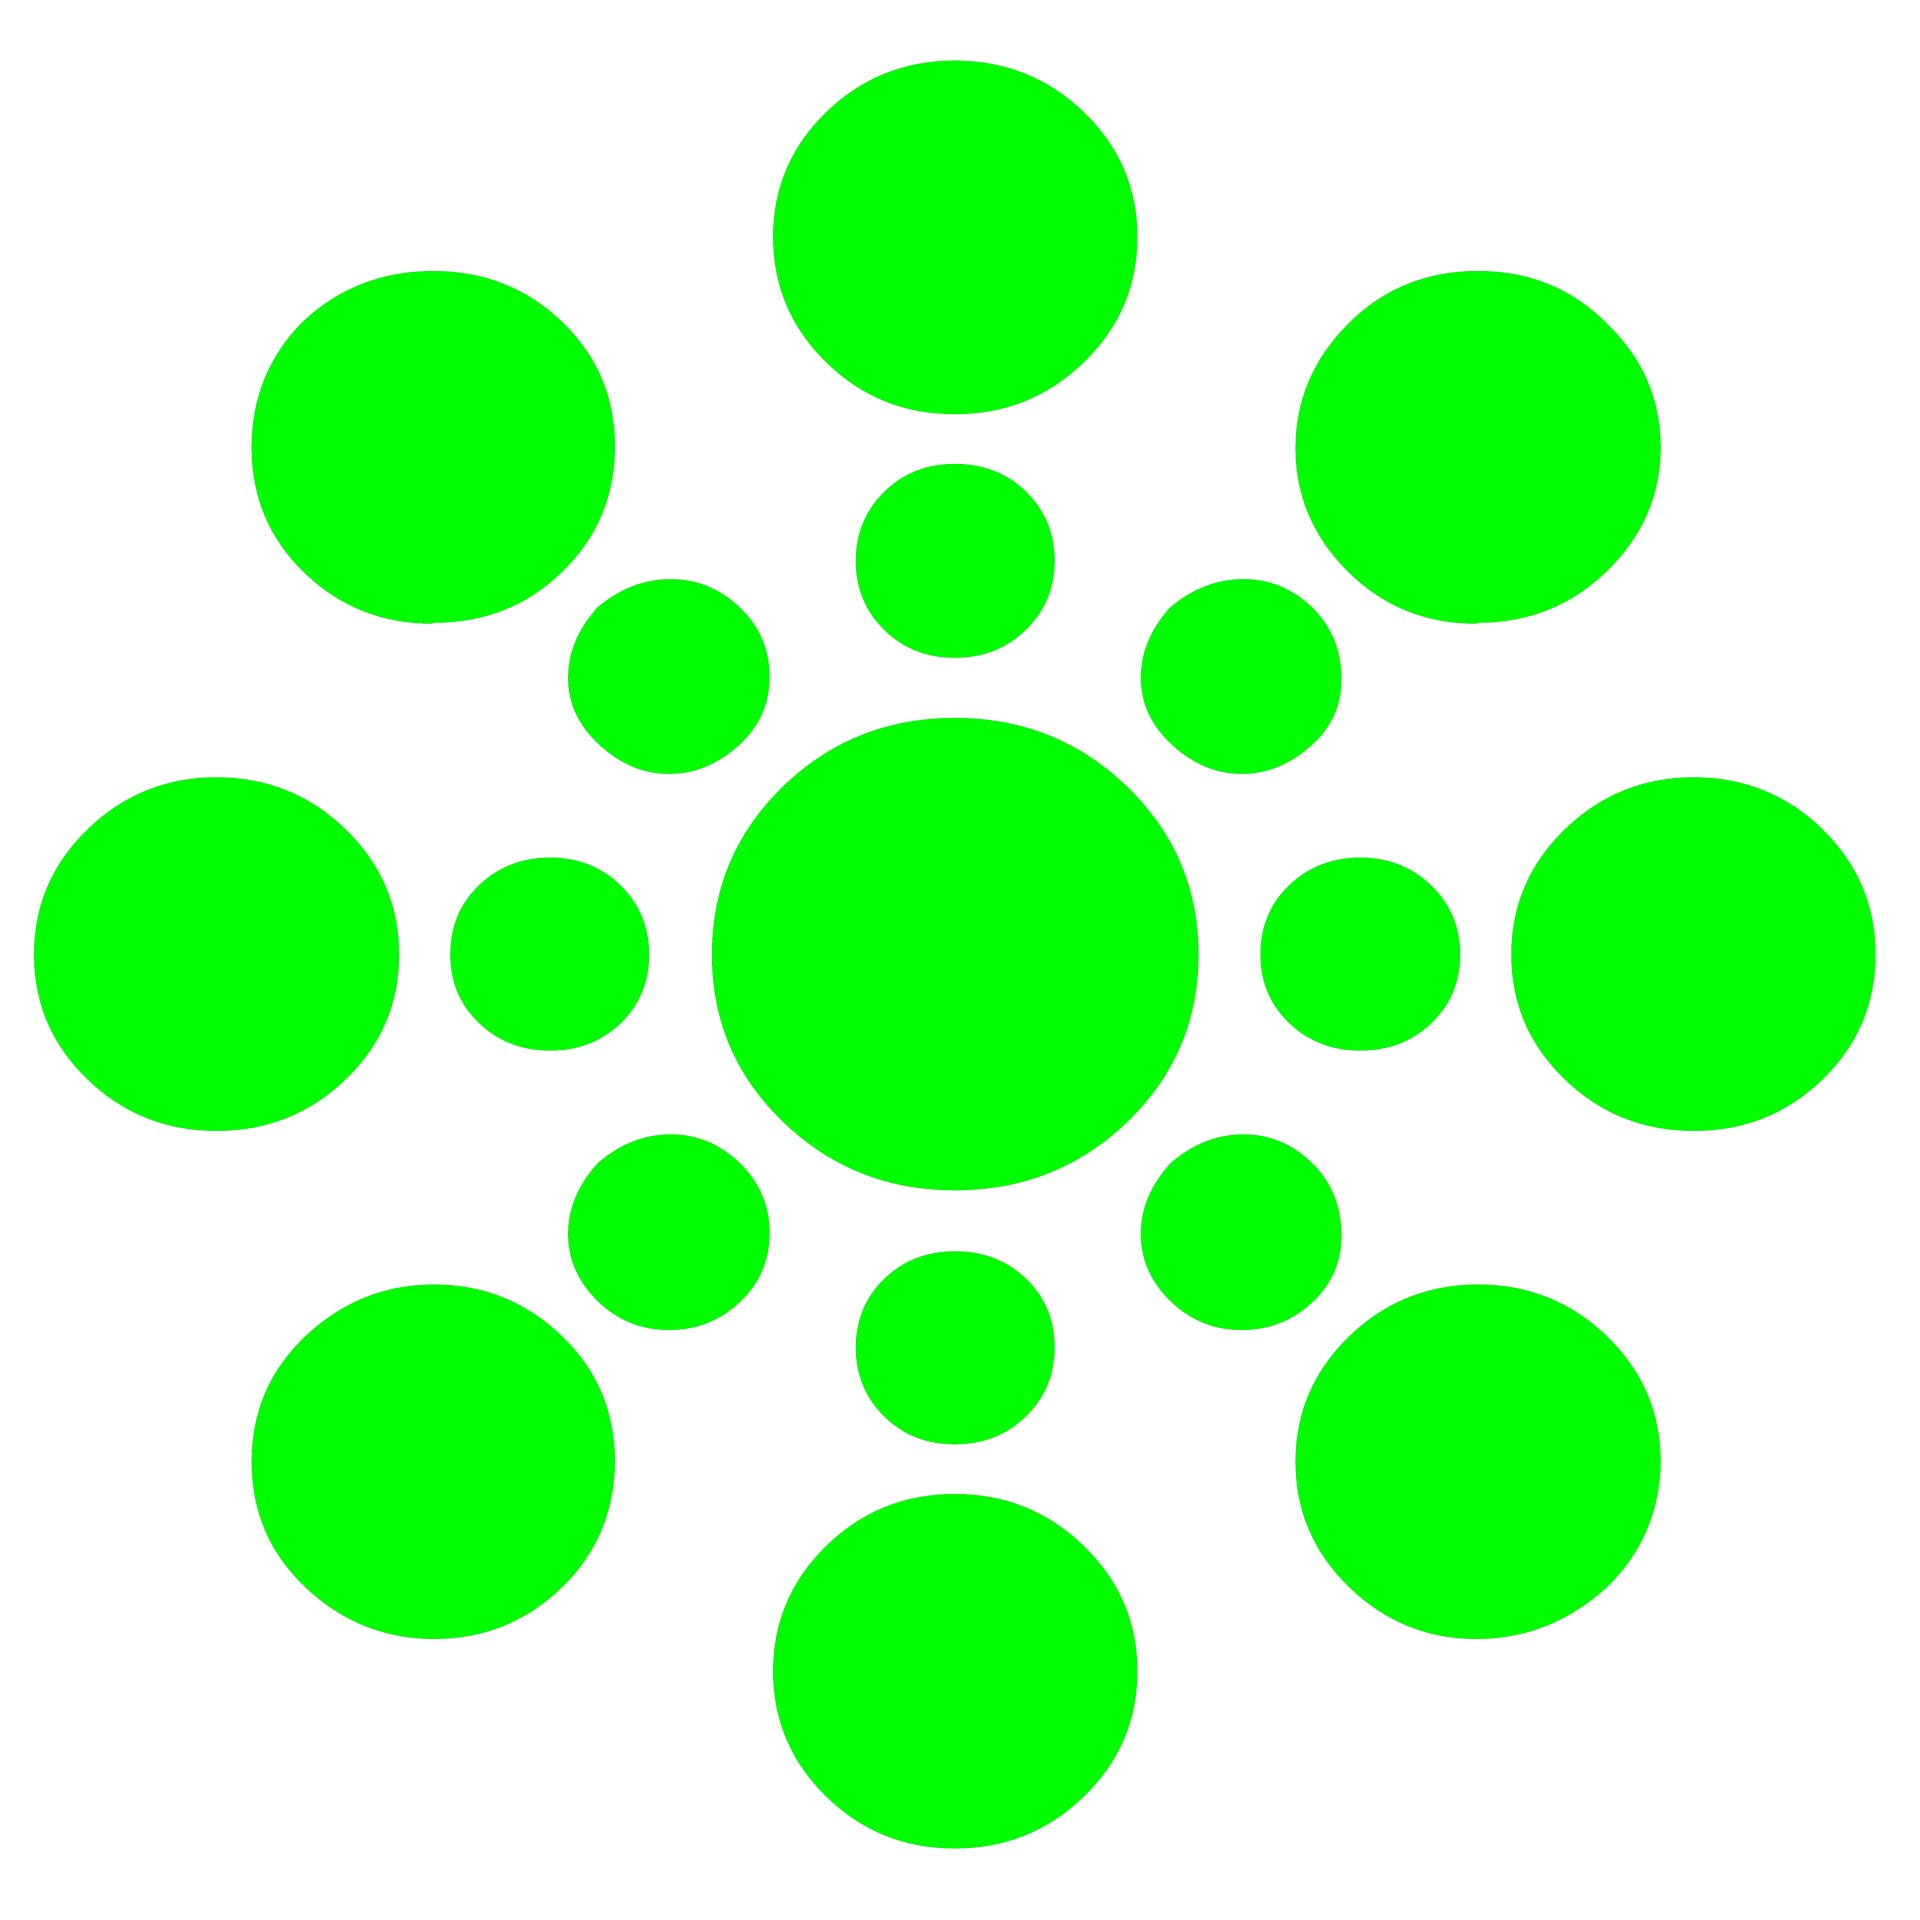 green dots pattern free photo